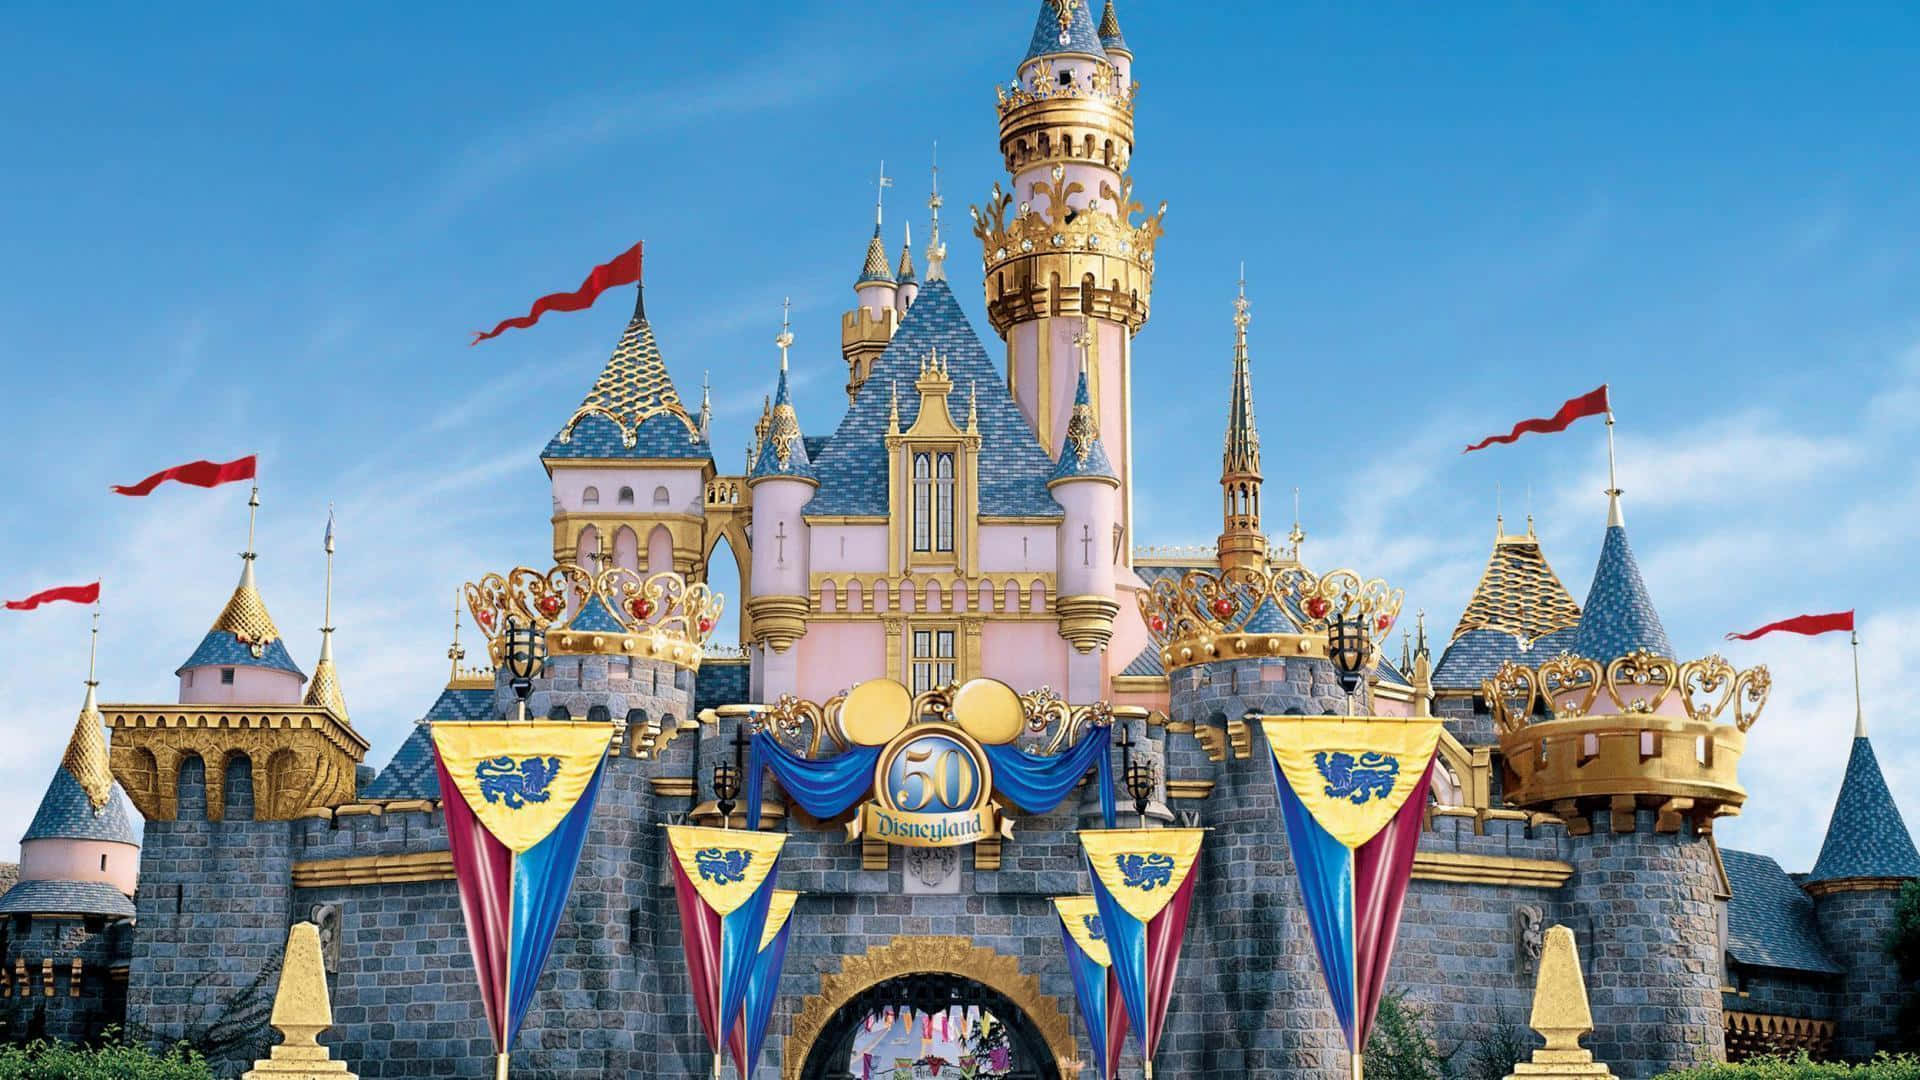 Bienvenidoa Disneyland, El Lugar Más Feliz En La Tierra.